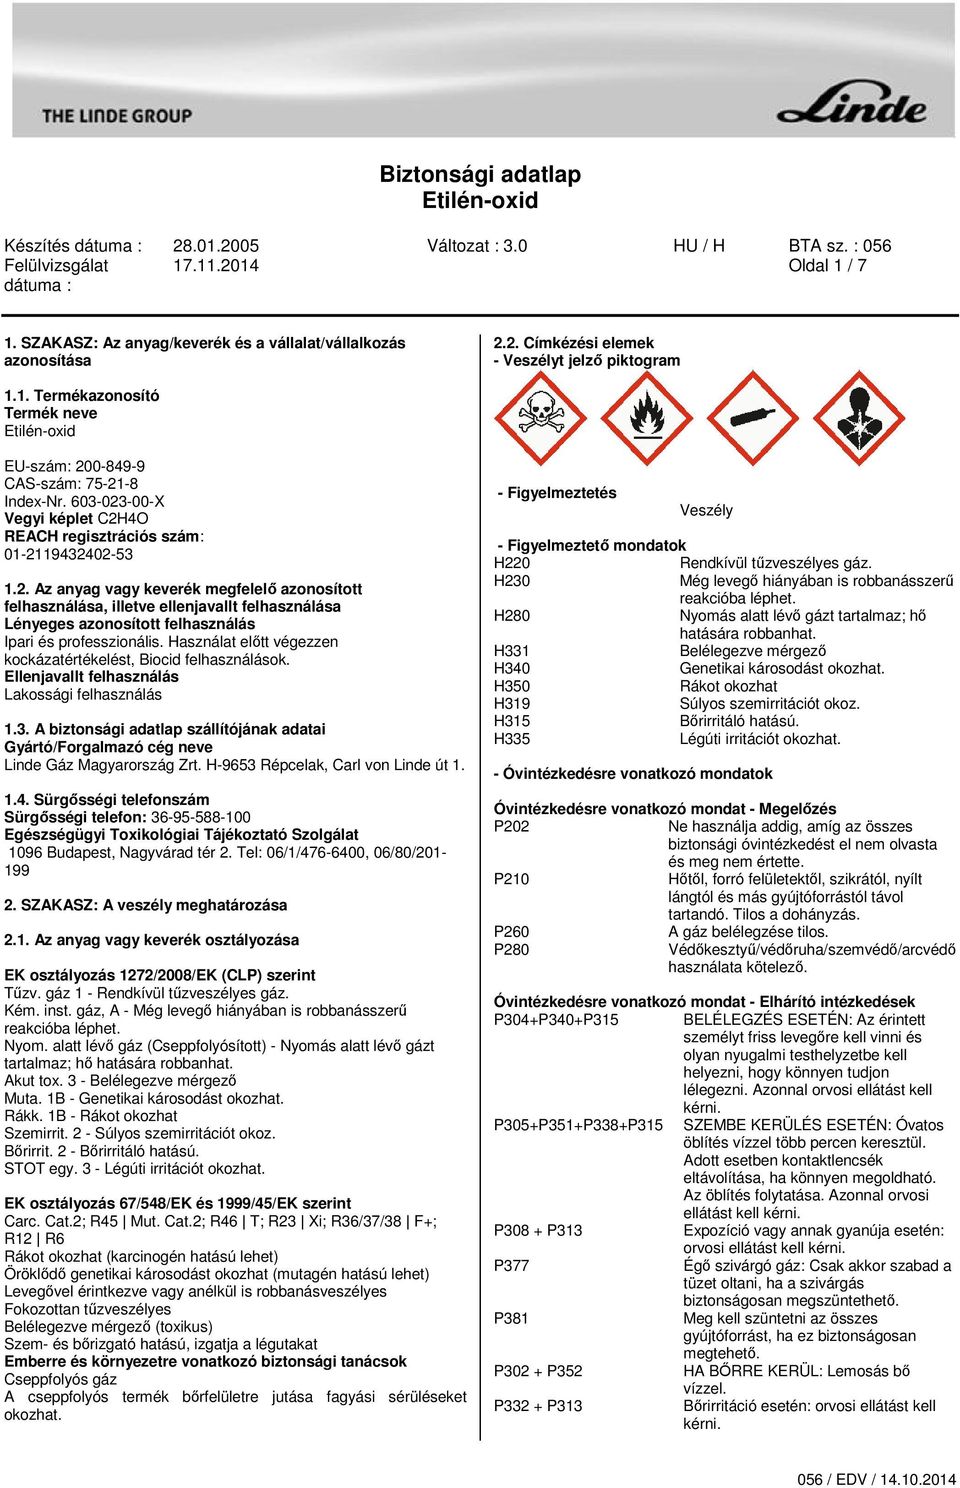 Biztonsági adatlap Etilén-oxid - PDF Ingyenes letöltés